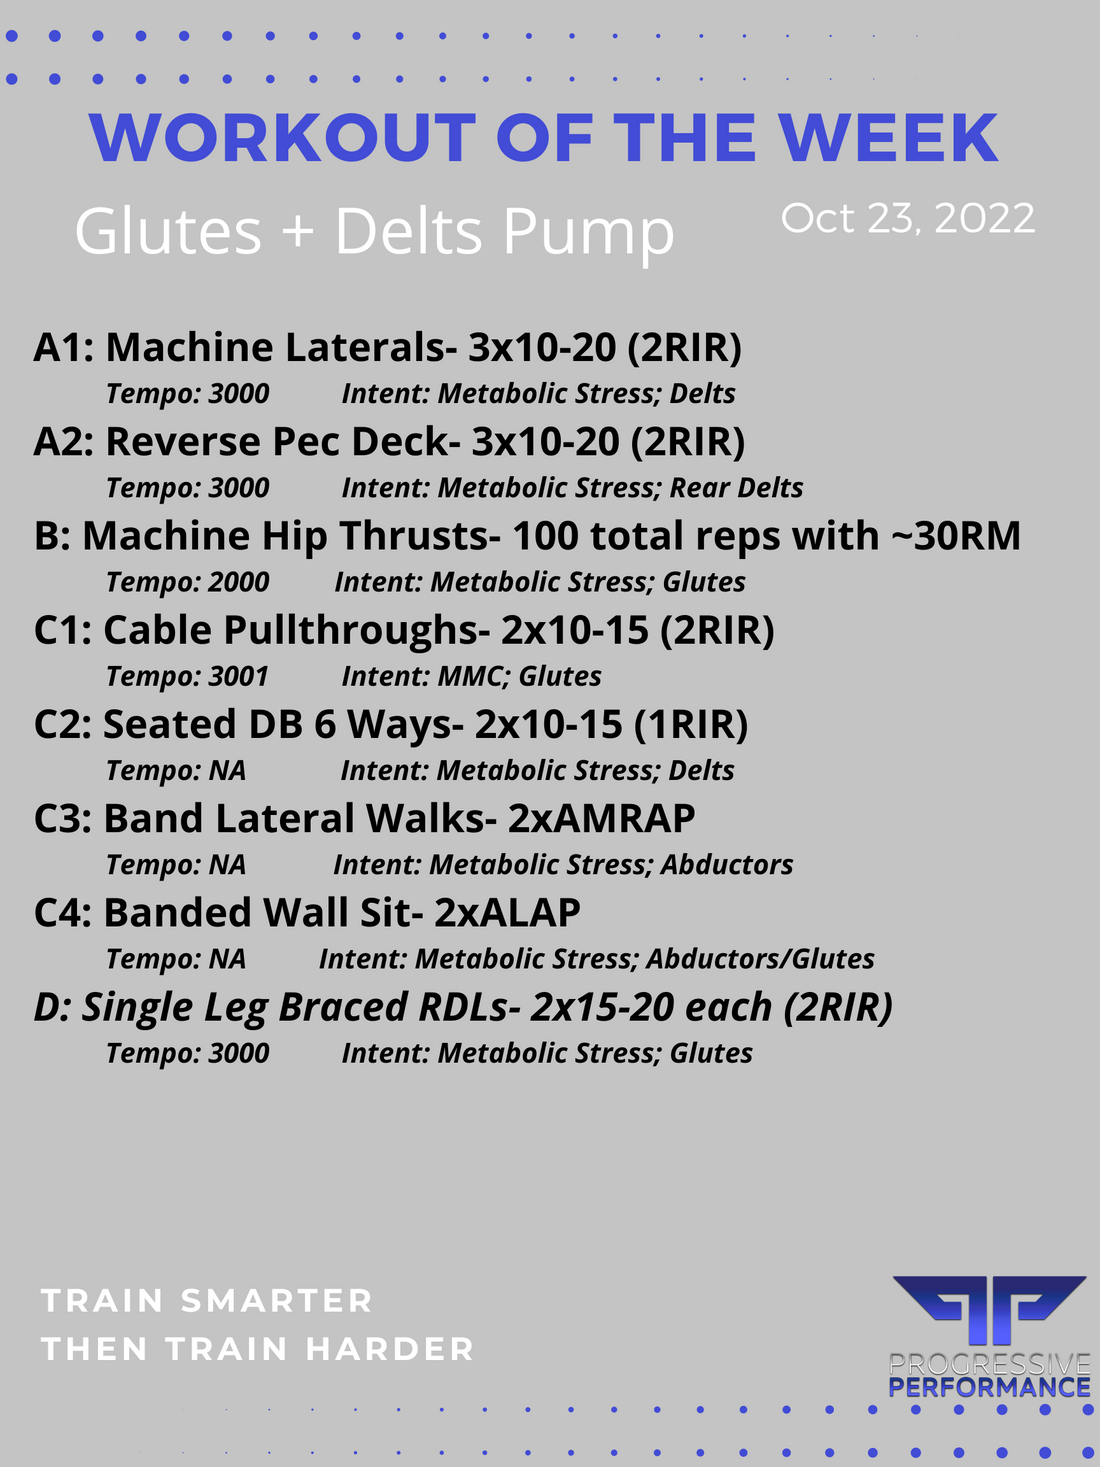 Glutes + Delts Pump